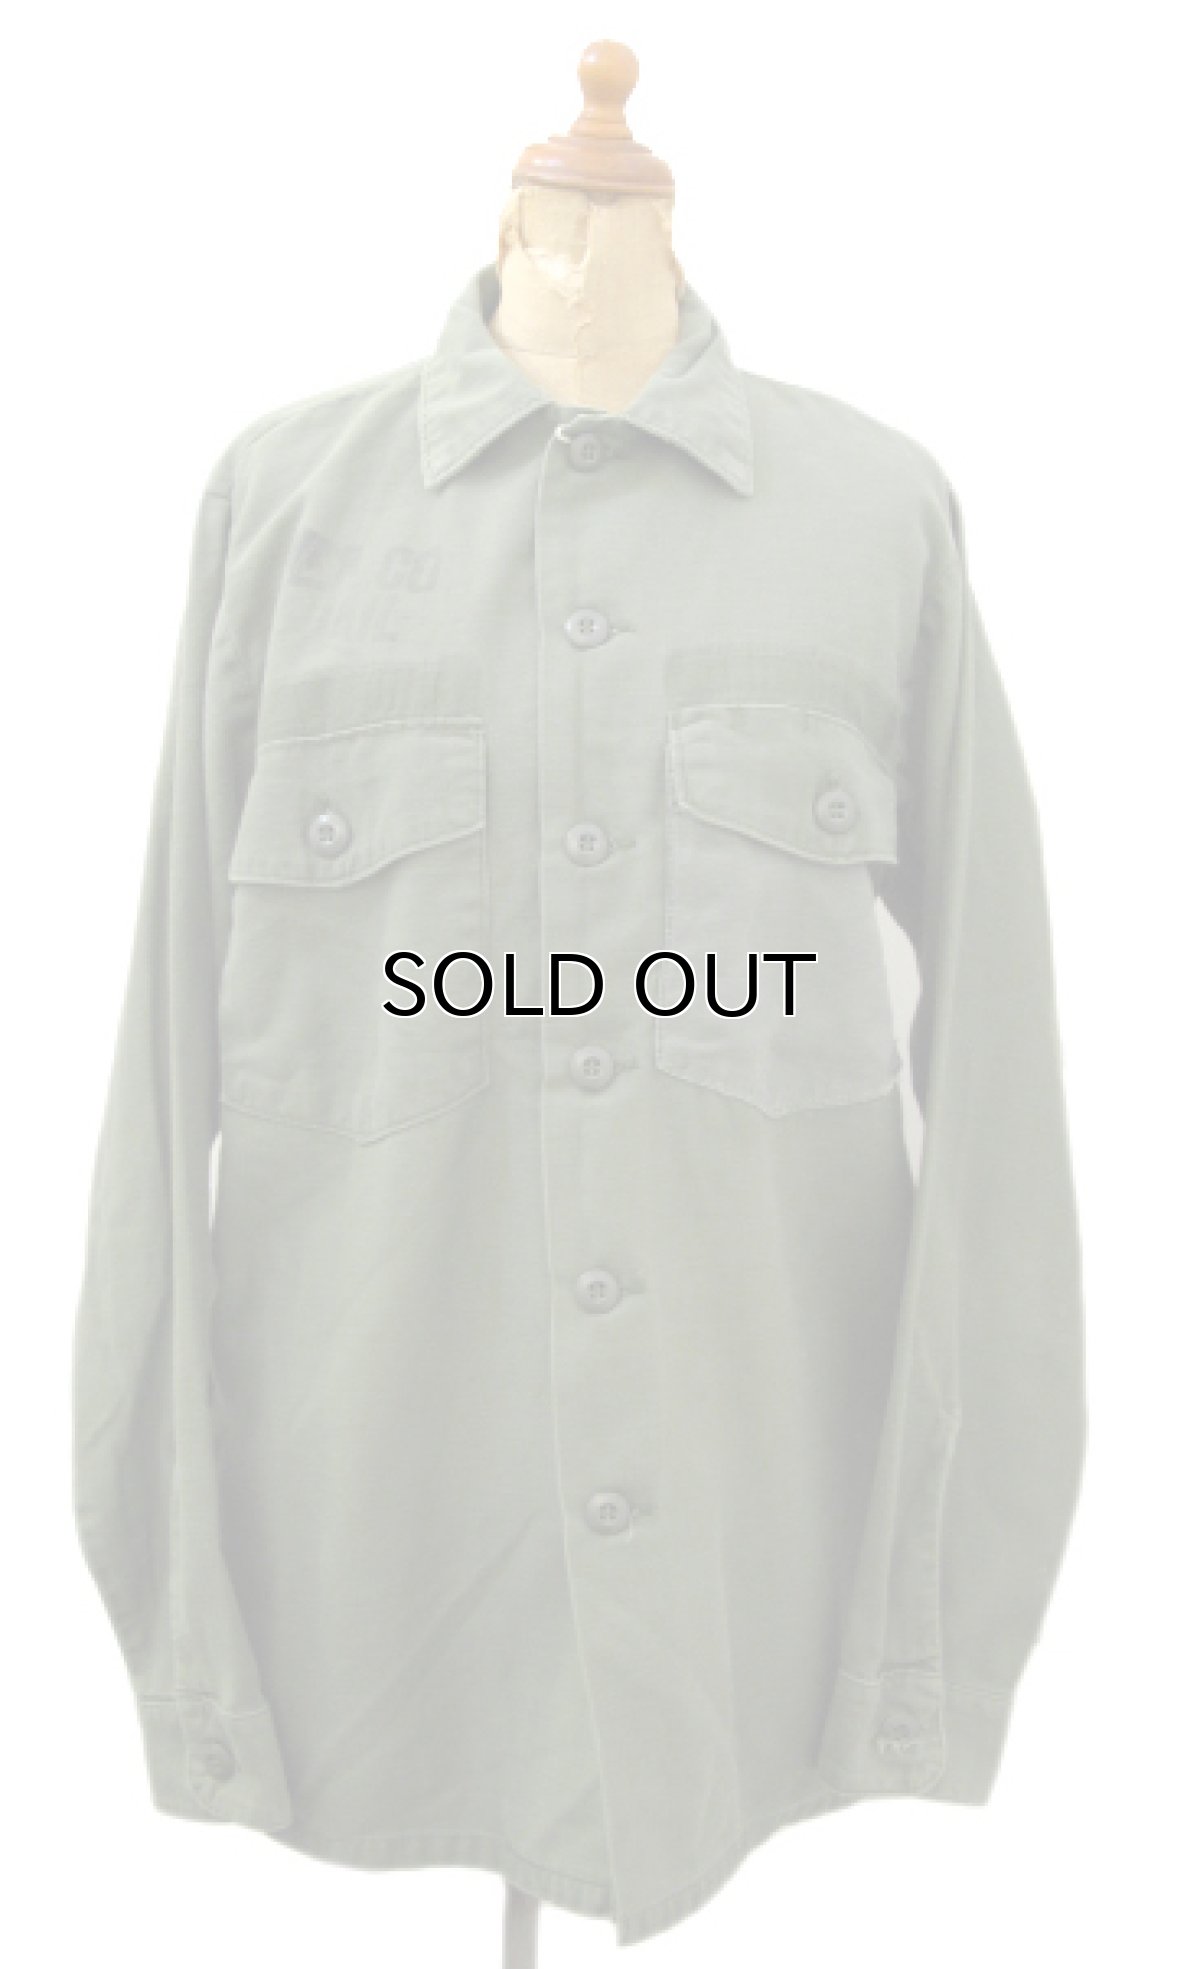 画像1: 1970's U.S.Military L/S Cotton Fatigue Shirts　OLIVE　size M - L (表記 15 1/2 x 33) (1)